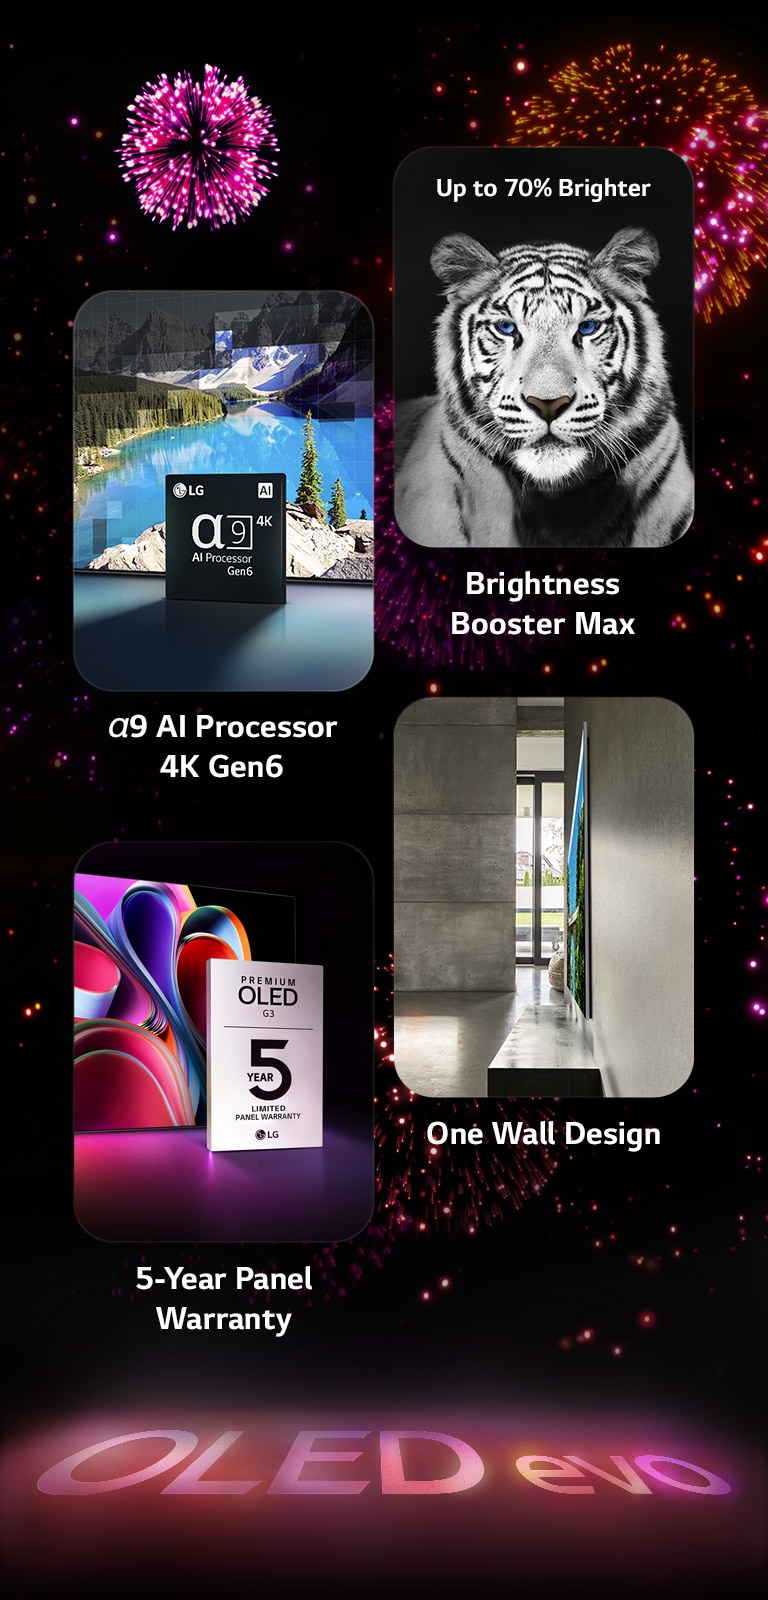 Obrázek představující klíčové vlastnosti LG OLED evo G3 na černém pozadí s růžovým a fialovým ohňostrojem. Růžový odraz od ohňostroje na zemi ukazuje slova "OLED evo." Na obrázku je obrázek znázorňující procesor α9 AI Processor 4K Gen6, který ukazuje čip stojící před obrázkem scény jezera remasterované technologií zpracování. Obrázek představující Brightness Booster Max ukazuje tygra s hlubokým kontrastem a jasnou bílou. Obrázek představující 5letou záruku na panel zobrazuje logo záruky Premium OLED G3 s displejem na pozadí. Obrázek představující One Wall Design ukazuje LG OLED evo G3 zarovnané se stěnou v šedém industriálním obytném prostoru.